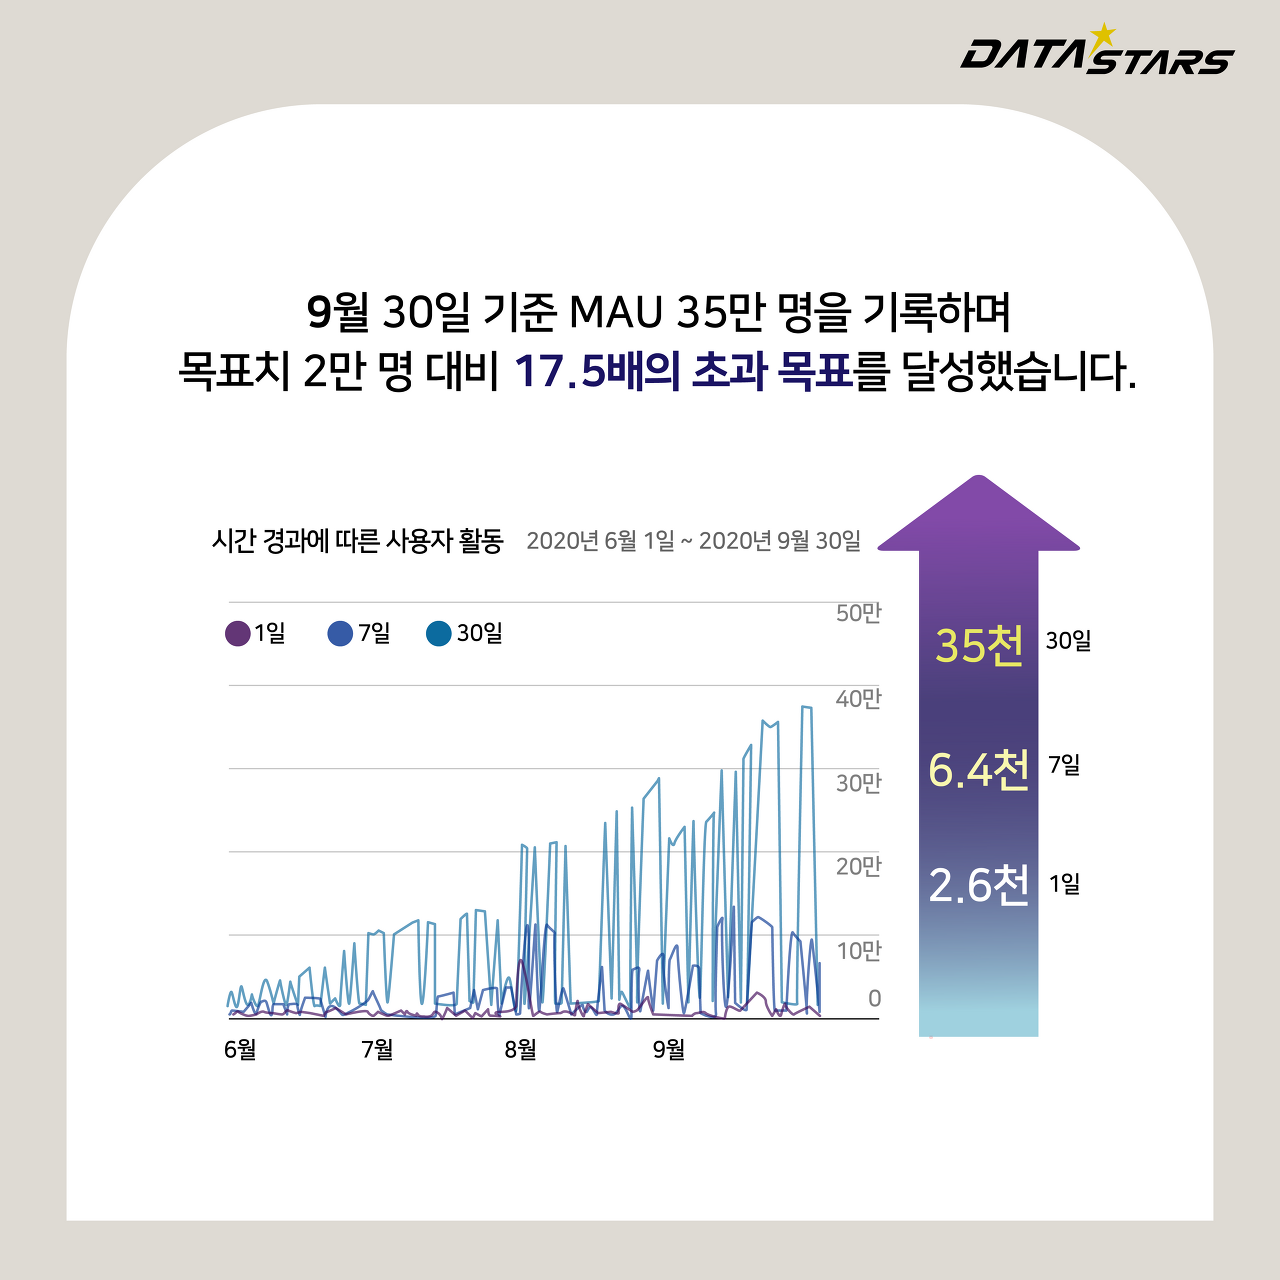 9월 30일 기준 MAU 35만 명을 기록하며 목표치 2만 명 대비 17.5배의 초과목표를 달성했습니다.